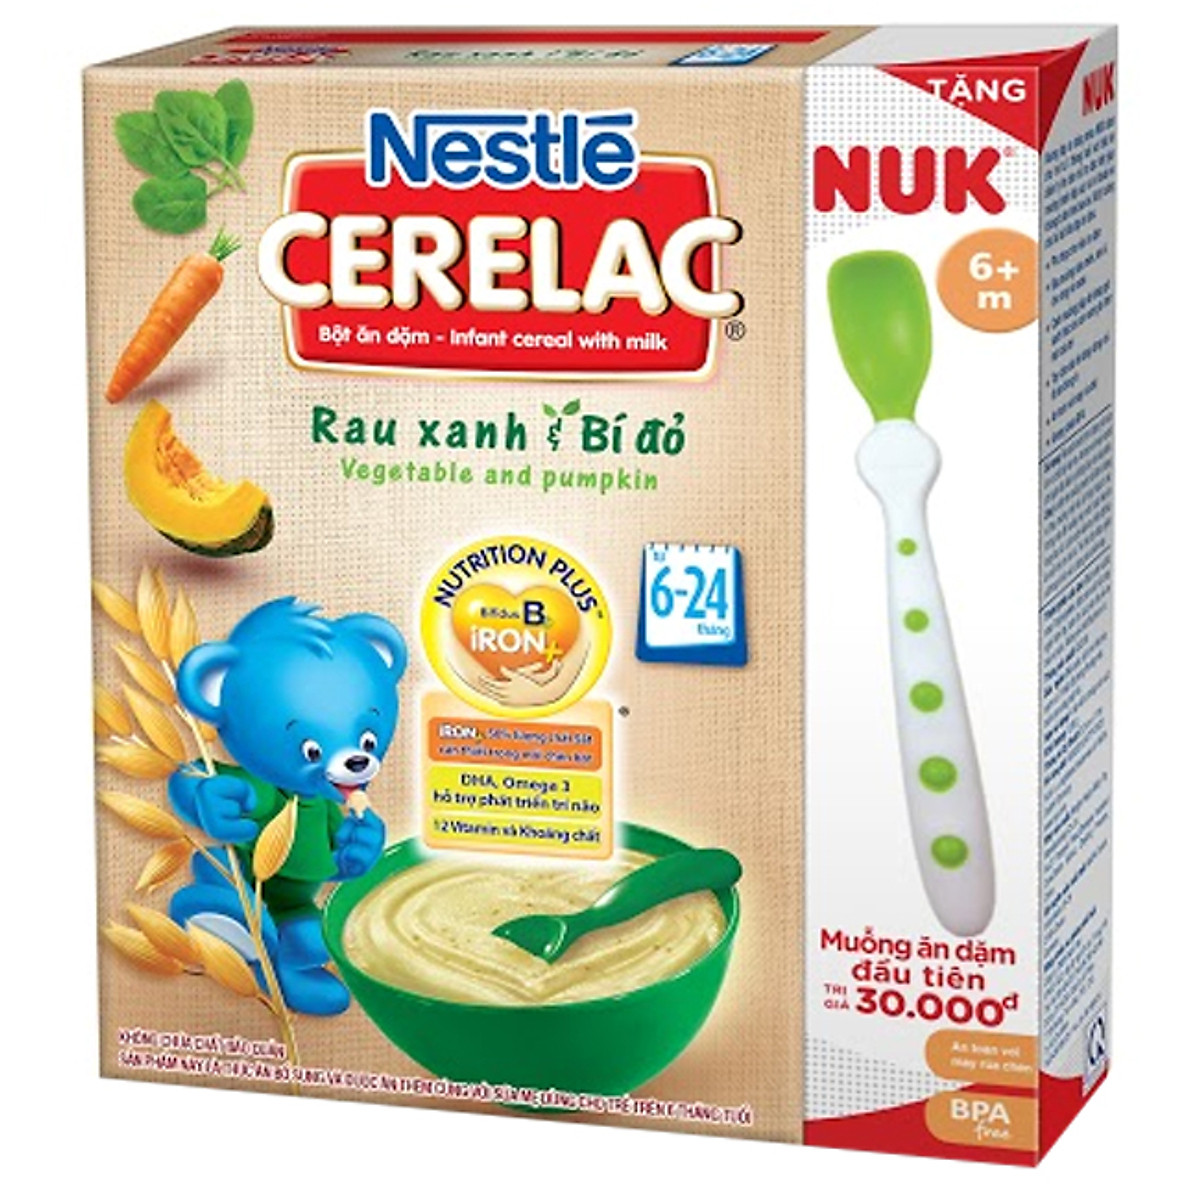 Bột Ăn Dặm Nestle Cerelac - Rau Xanh Và Bí Đỏ (200g) Tặng Kèm Muỗng Ăn Dặm Nuk